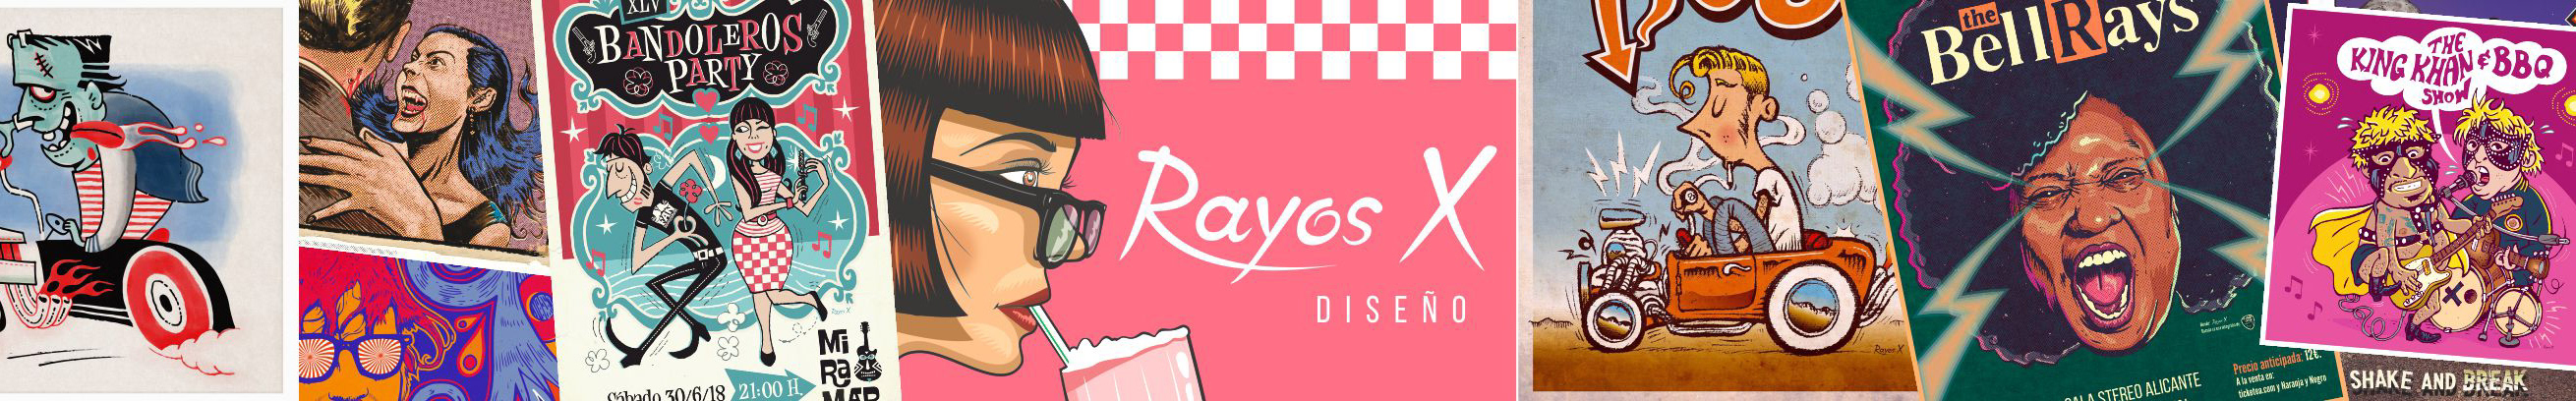 RAYOS X のプロファイルバナー